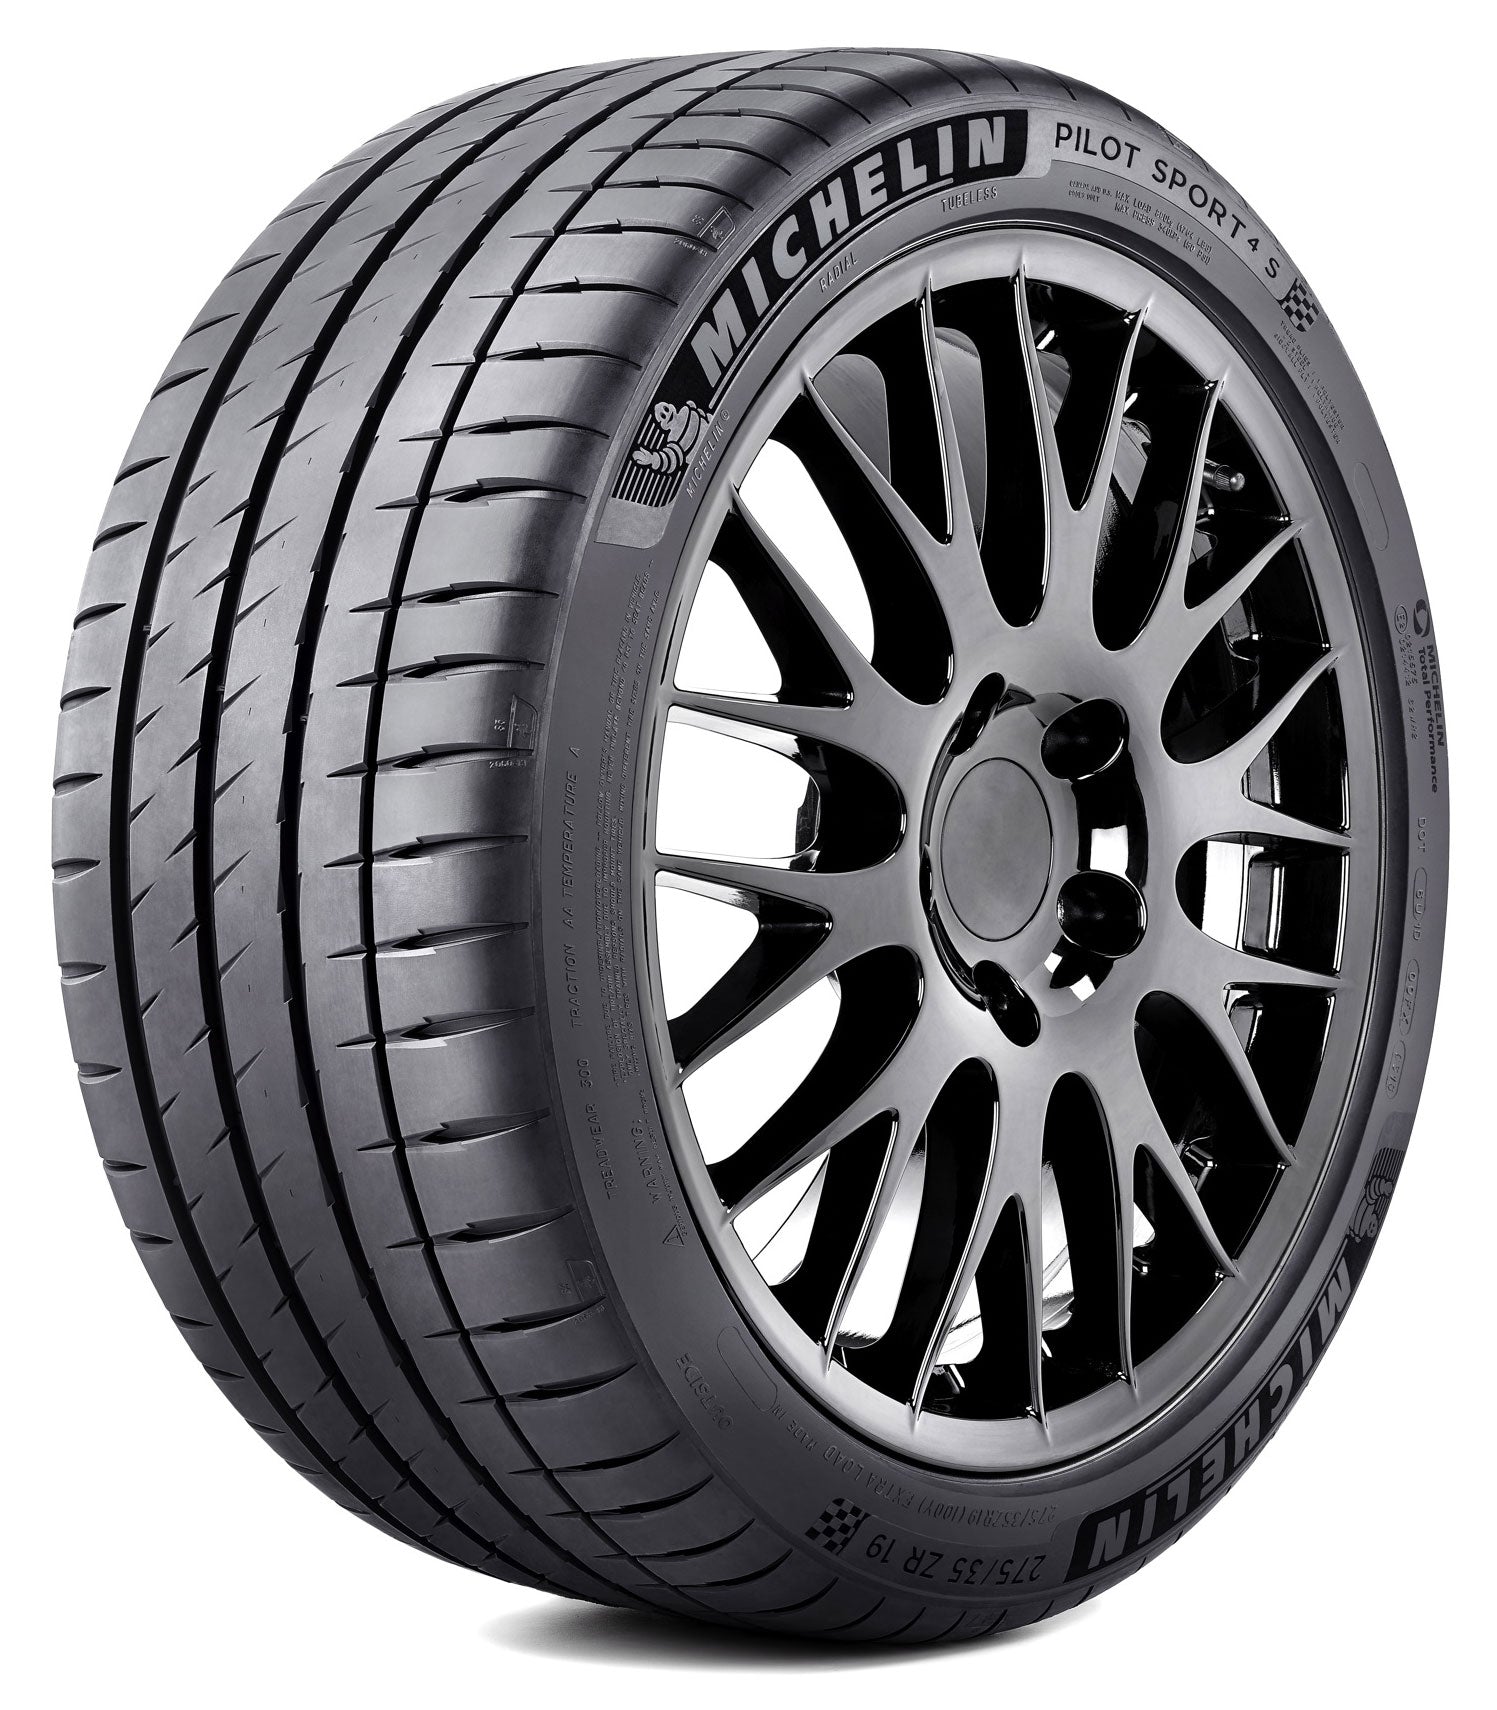 Michelin Pilot Sport 4s 285/30R20 99Y XL - MODE Auto Concepts